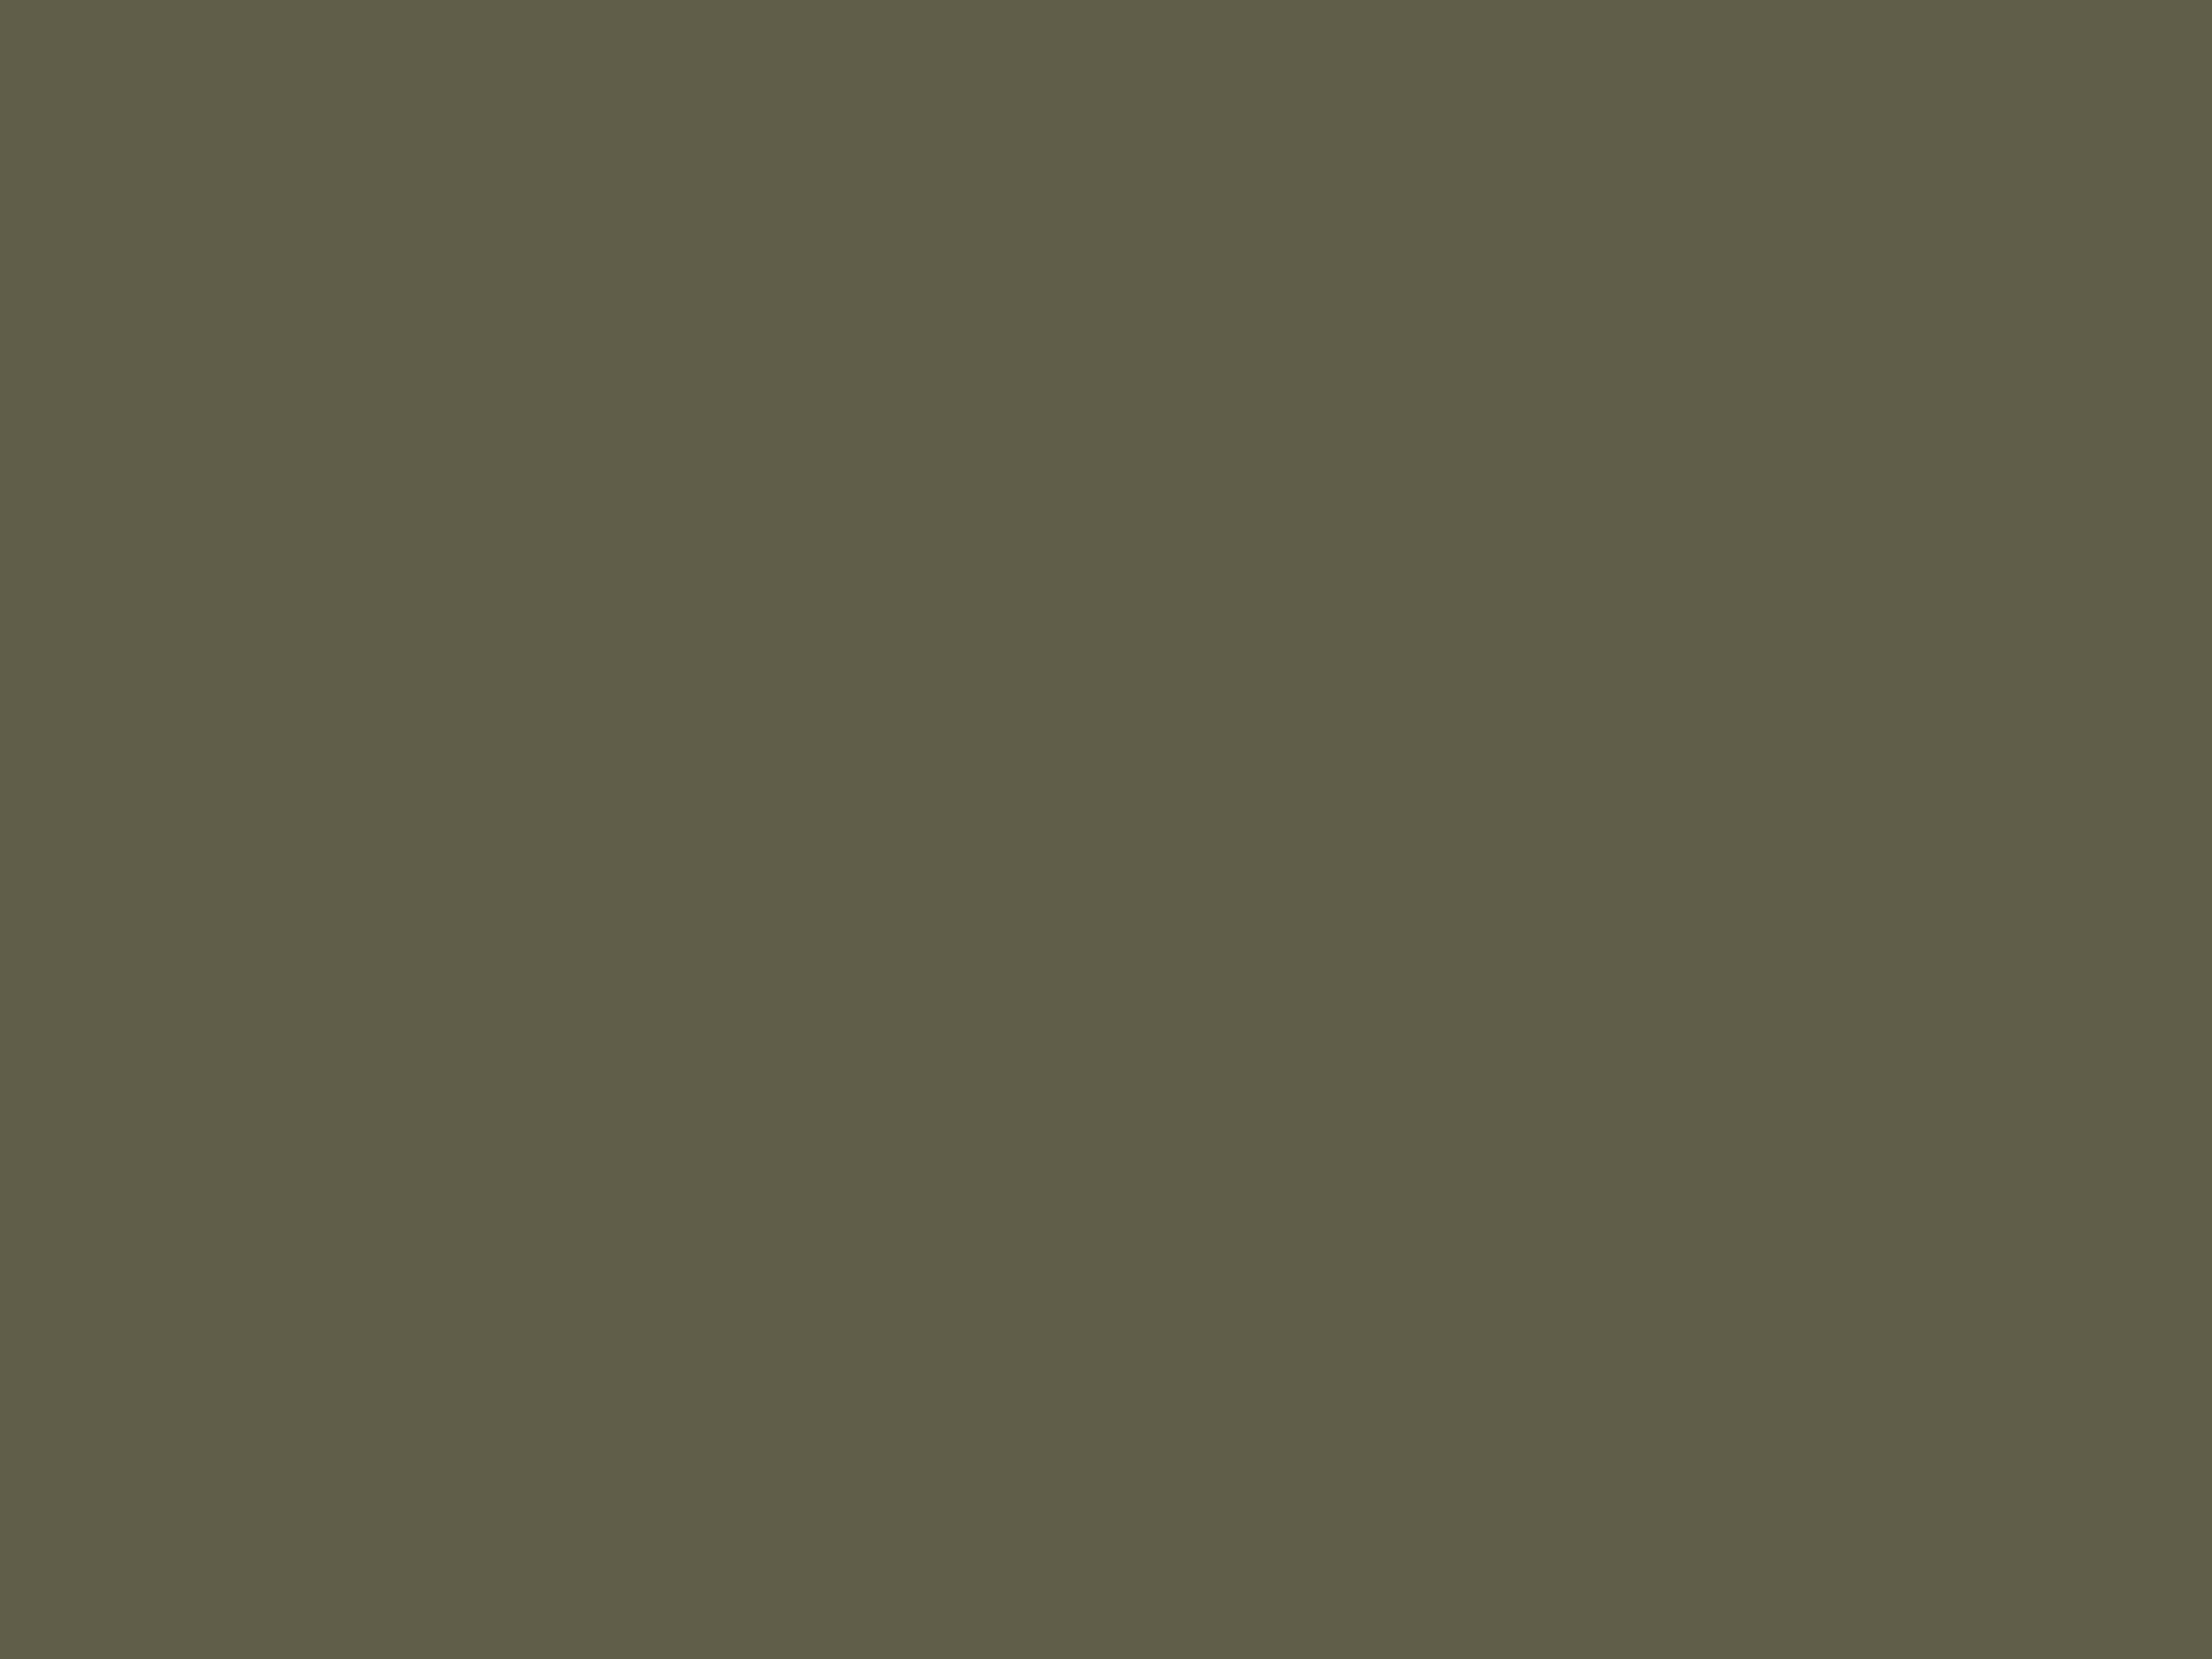 Иван Шишкин. Утро в сосновом лесу (фрагмент). 1889. Государственная Третьяковская галерея, Москва